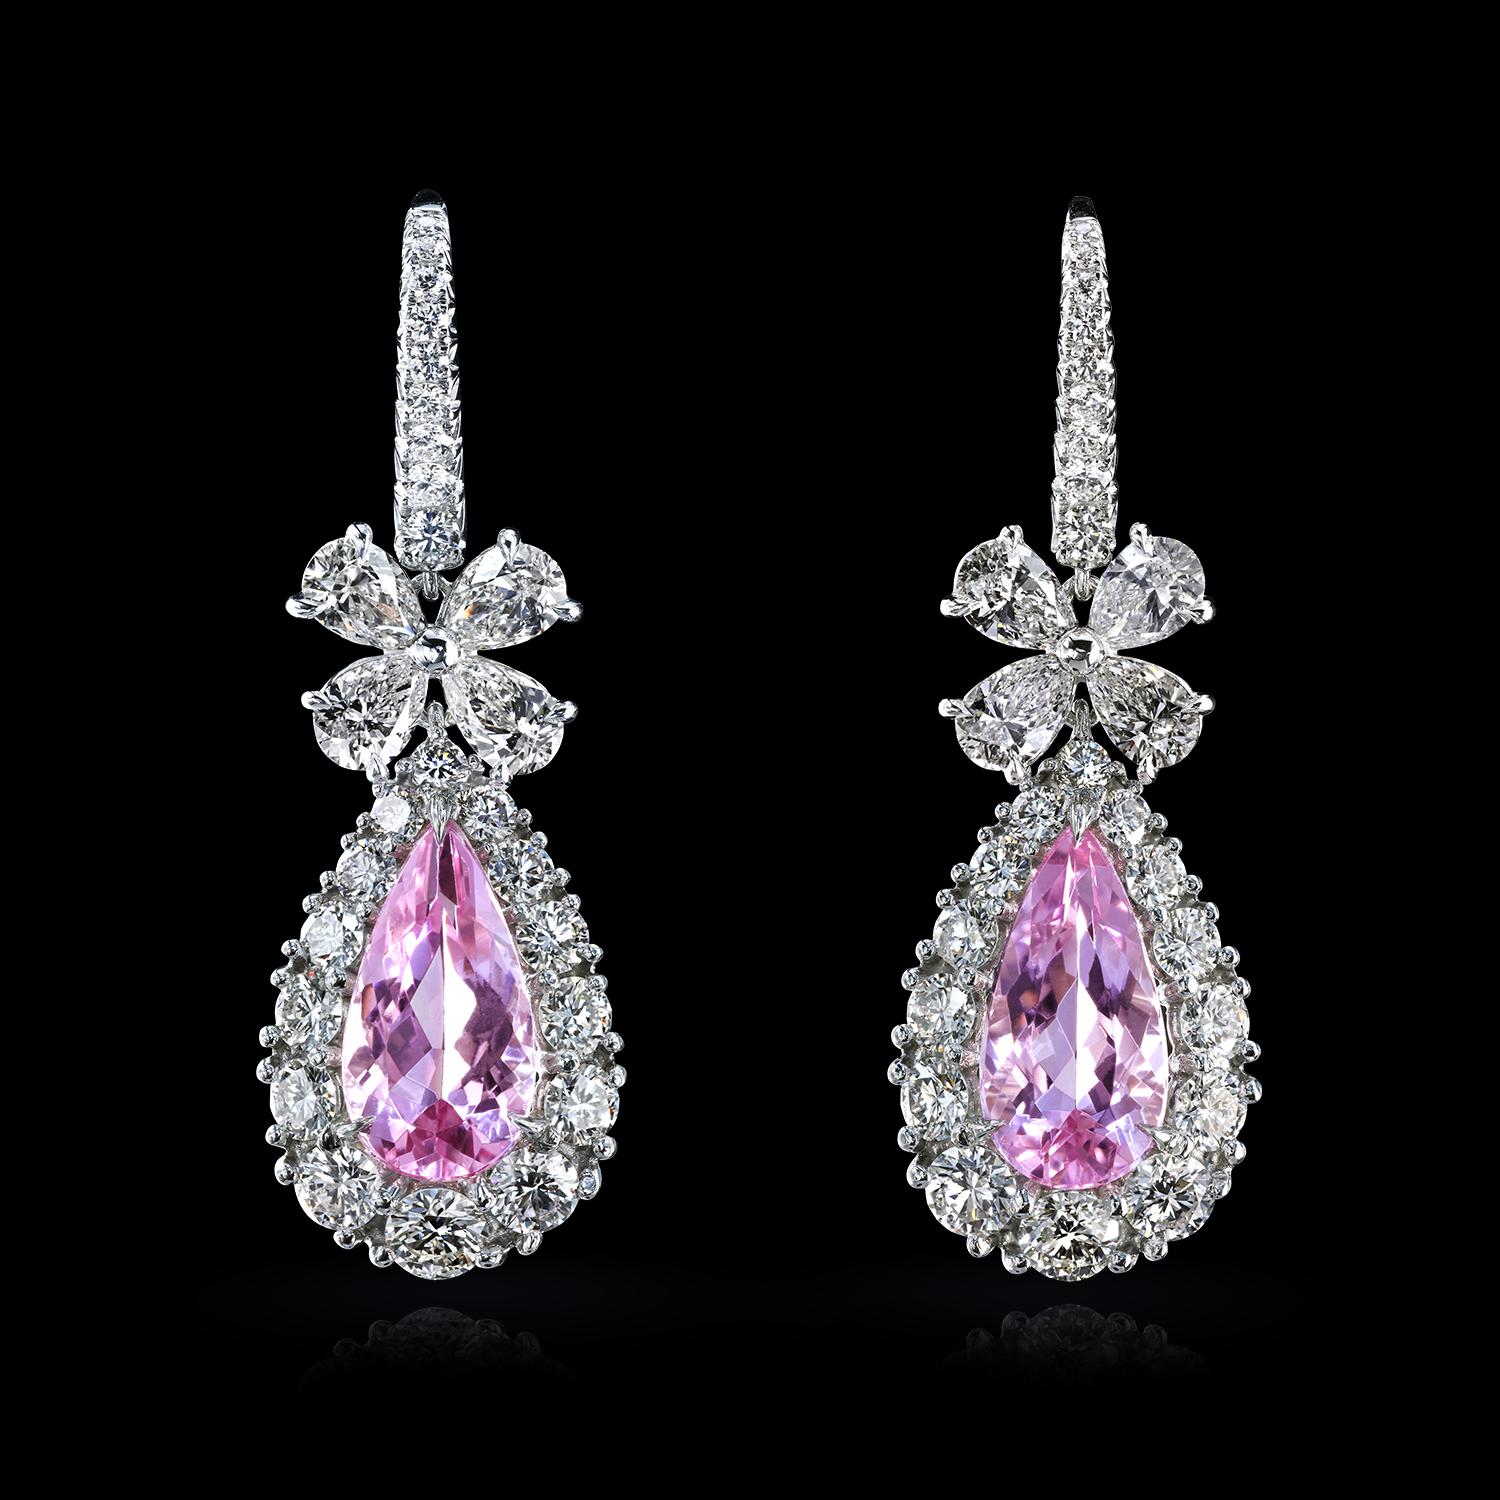 Wunderschöne Platin-Ohrringe mit rosa Smaragden - natürliche Morganite von knapp zwei Karat, eingebettet in abgestufte Diamantcluster. Die birnenförmigen Anhänger, die Diamantschleifen und die mit Pflastersteinen besetzten französischen Drähte sind